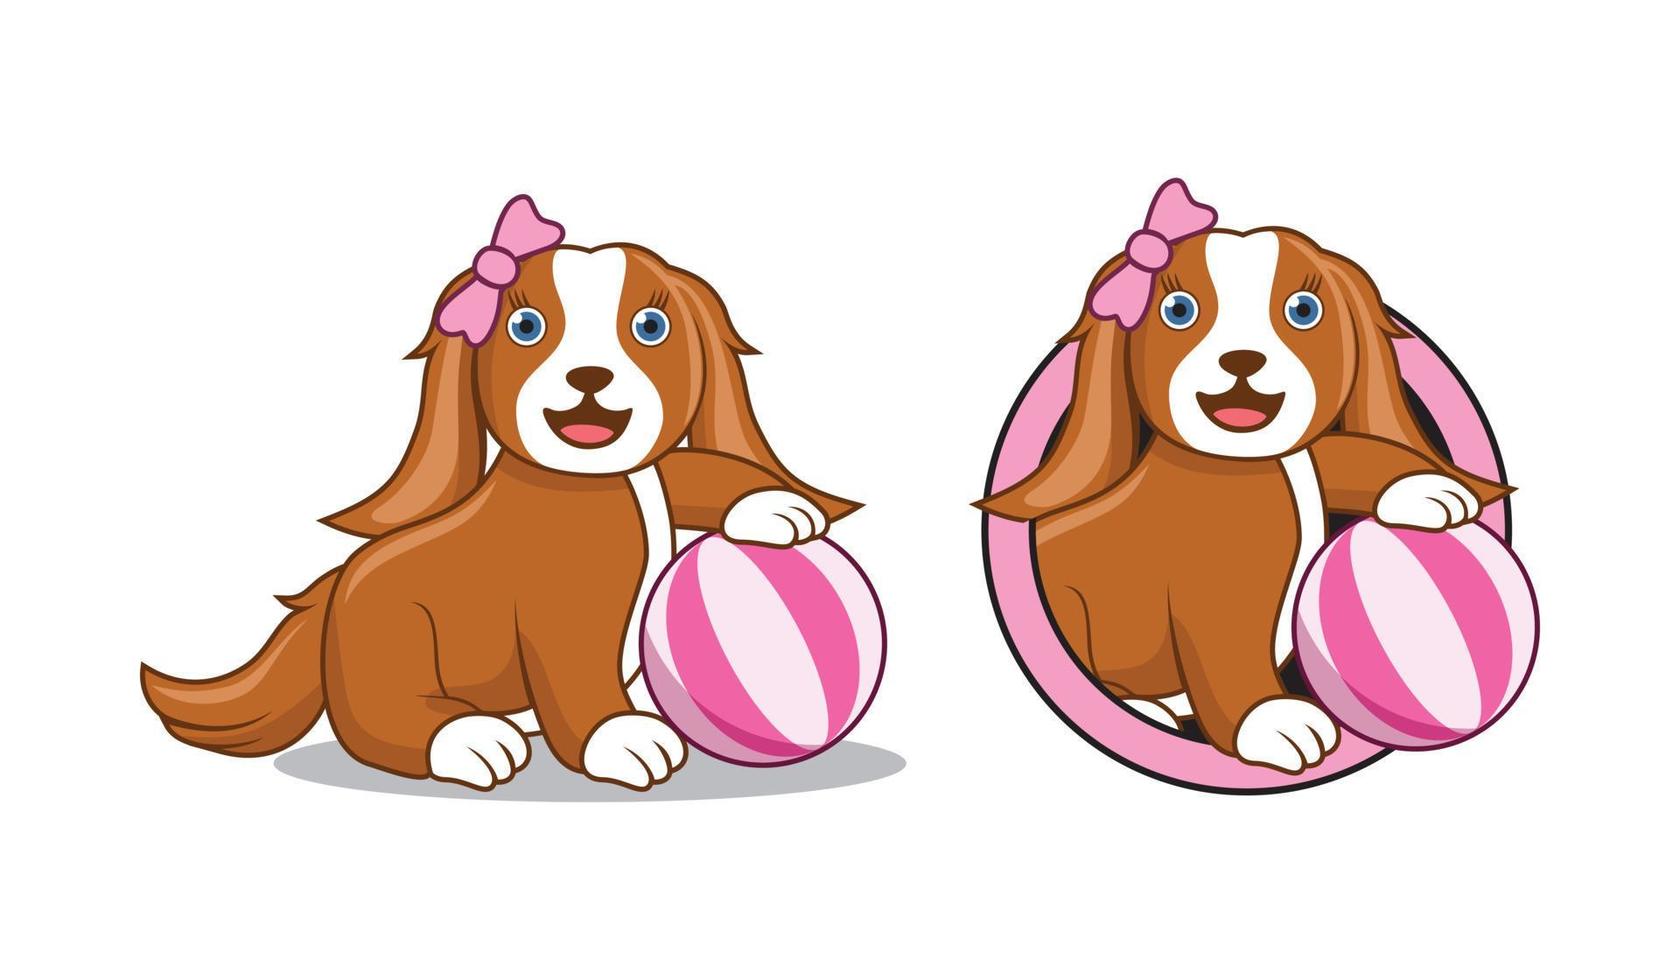 illustrazione di design del personaggio dei cartoni animati di cane carino vettore